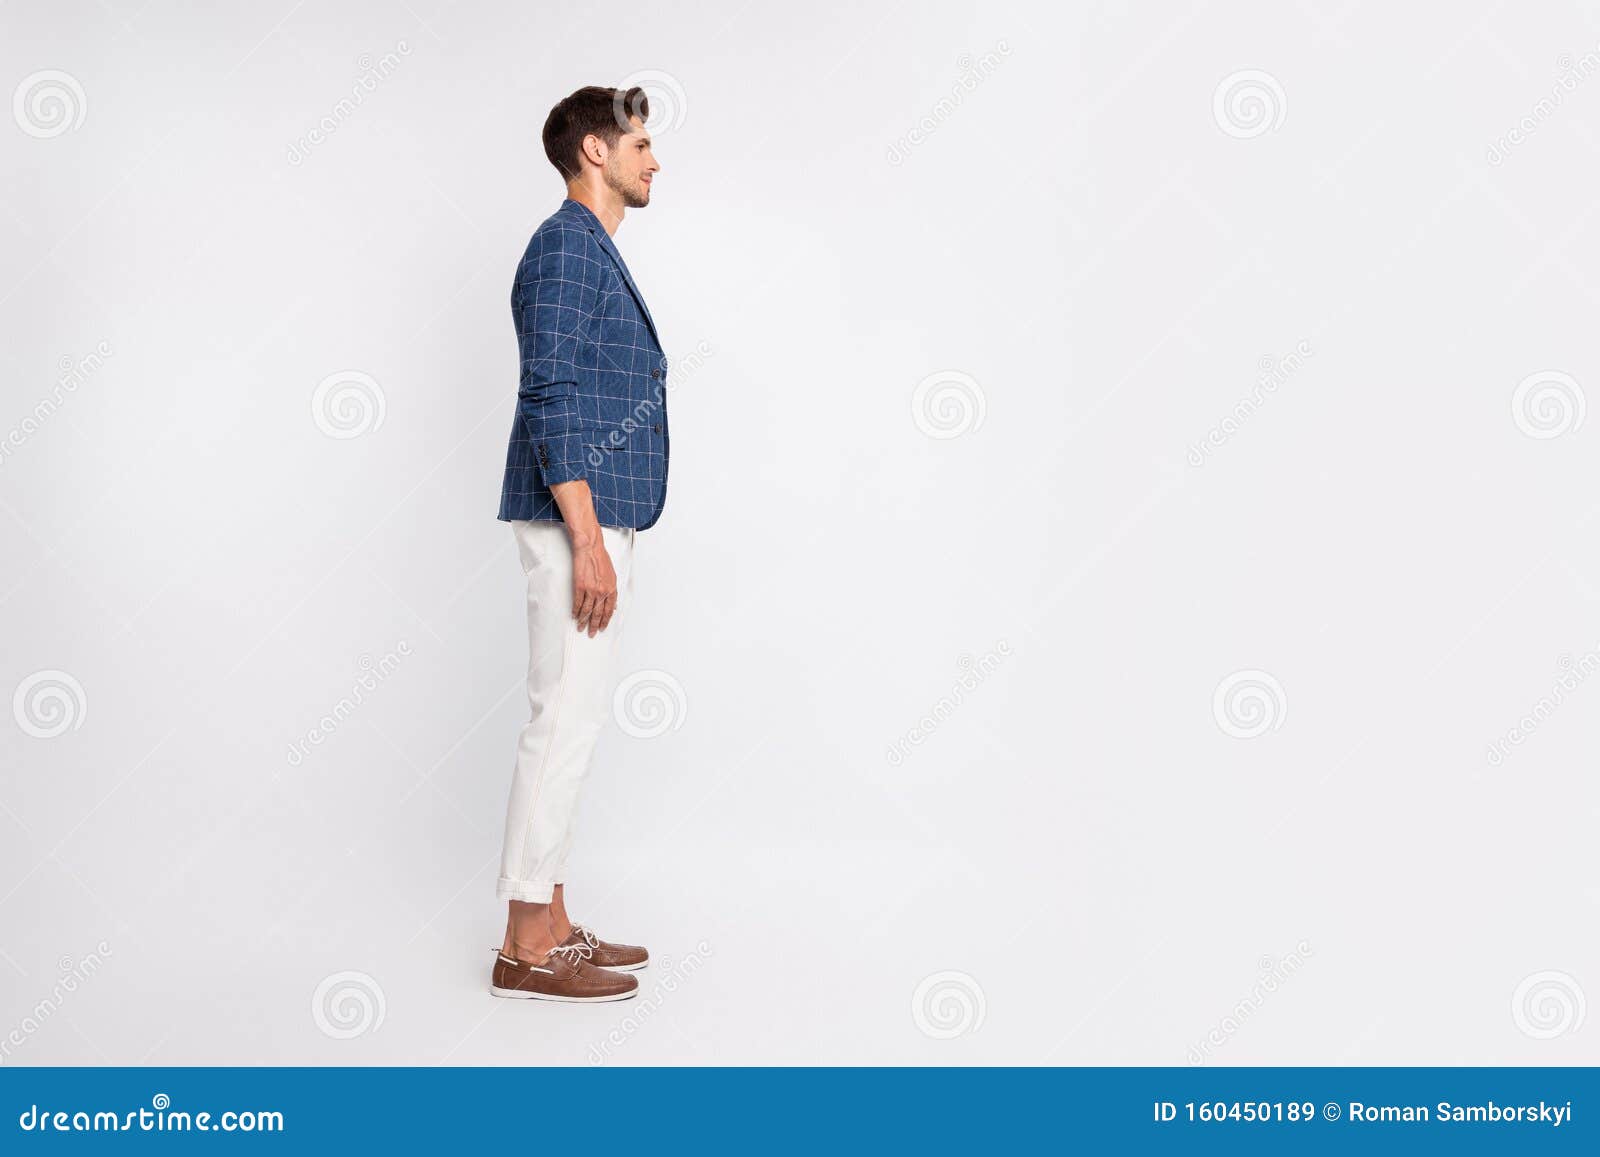 Foto De Perfil Completo Del Hombre Concentrado Con Pantalones Chaqueta Azul Celeste Sobre Blanco Imagen de - de individuo, modelo: 160450189